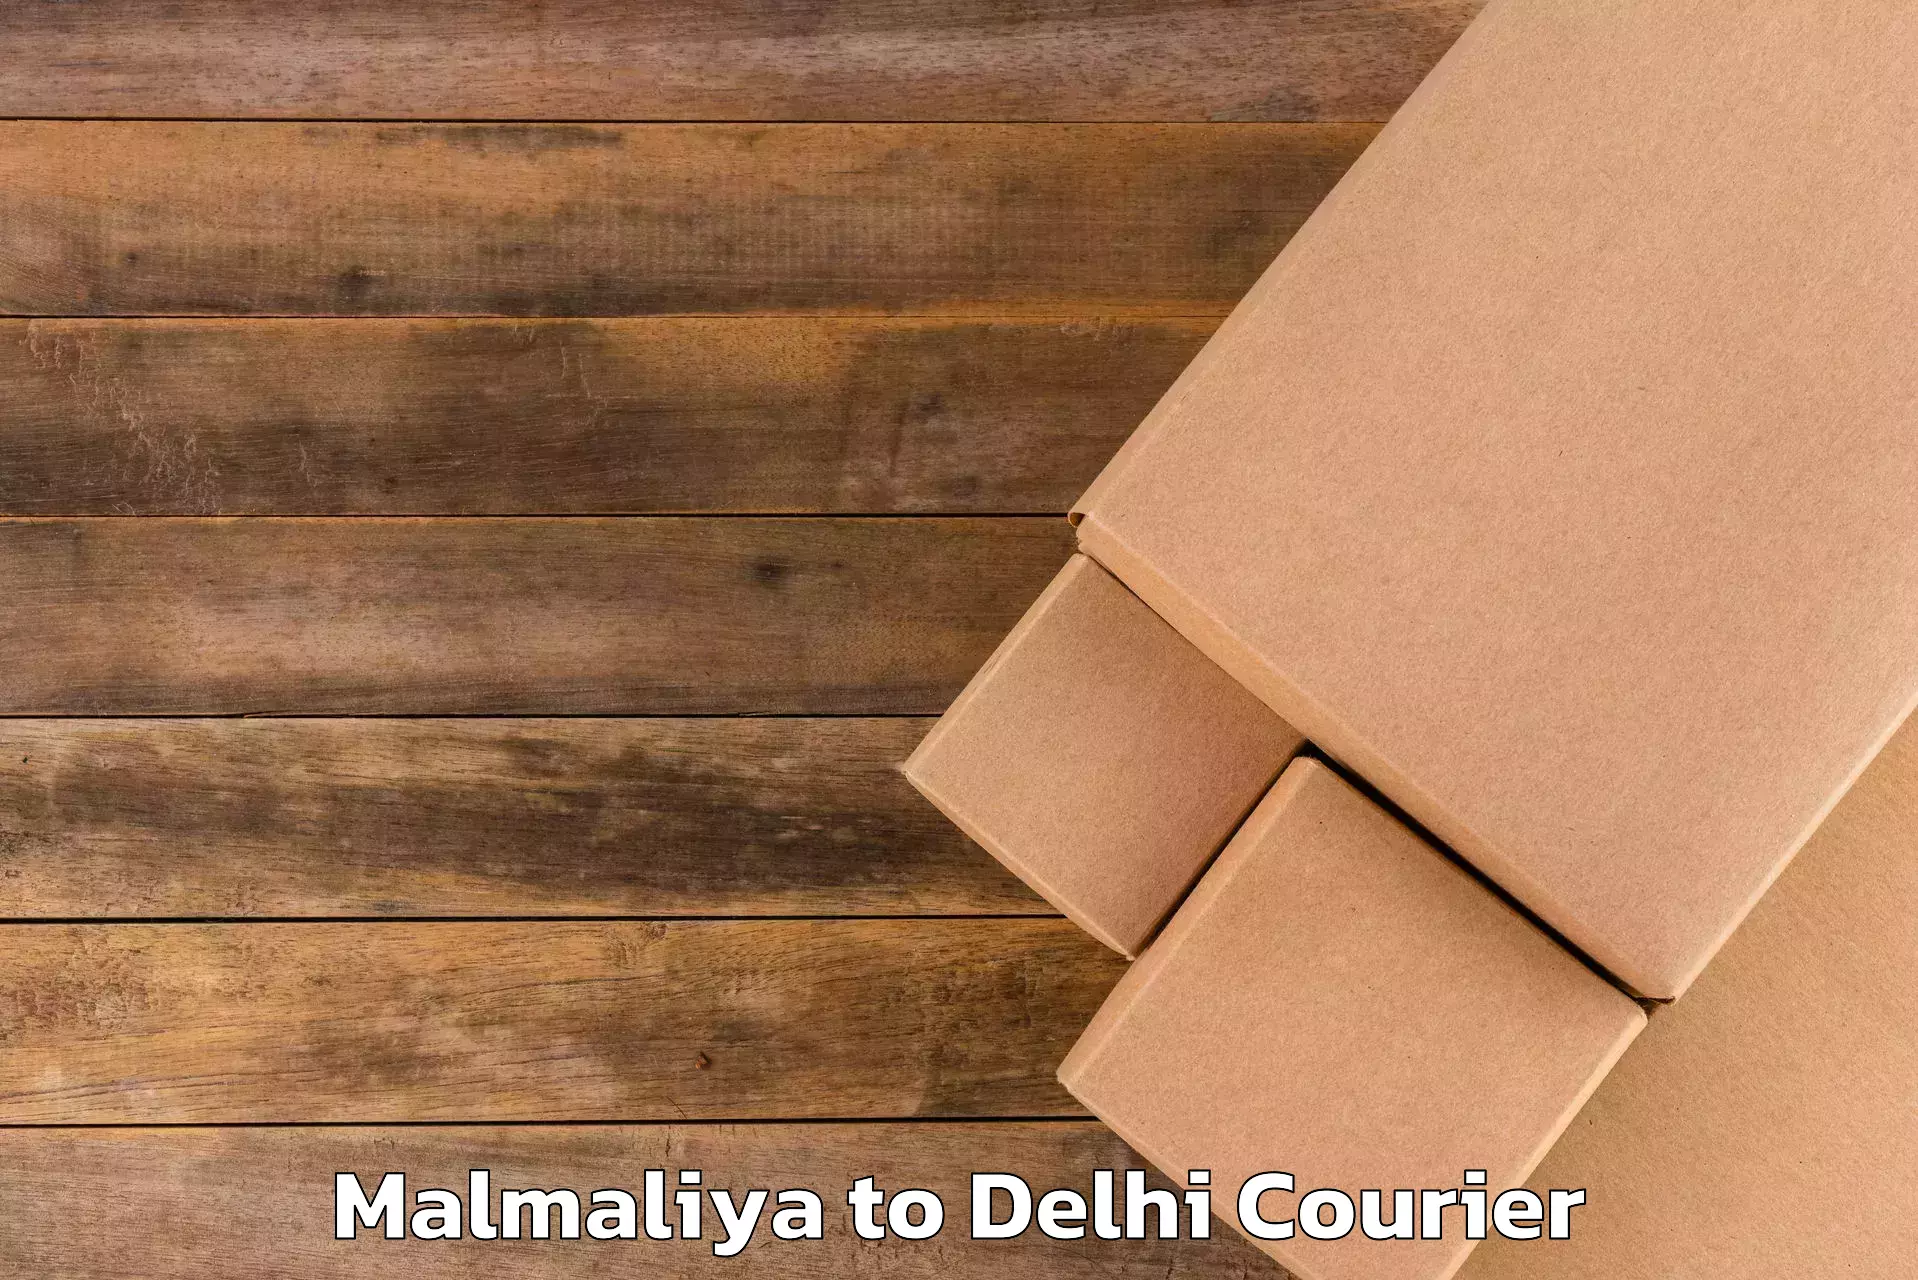 High-quality baggage shipment Malmaliya to Jhilmil